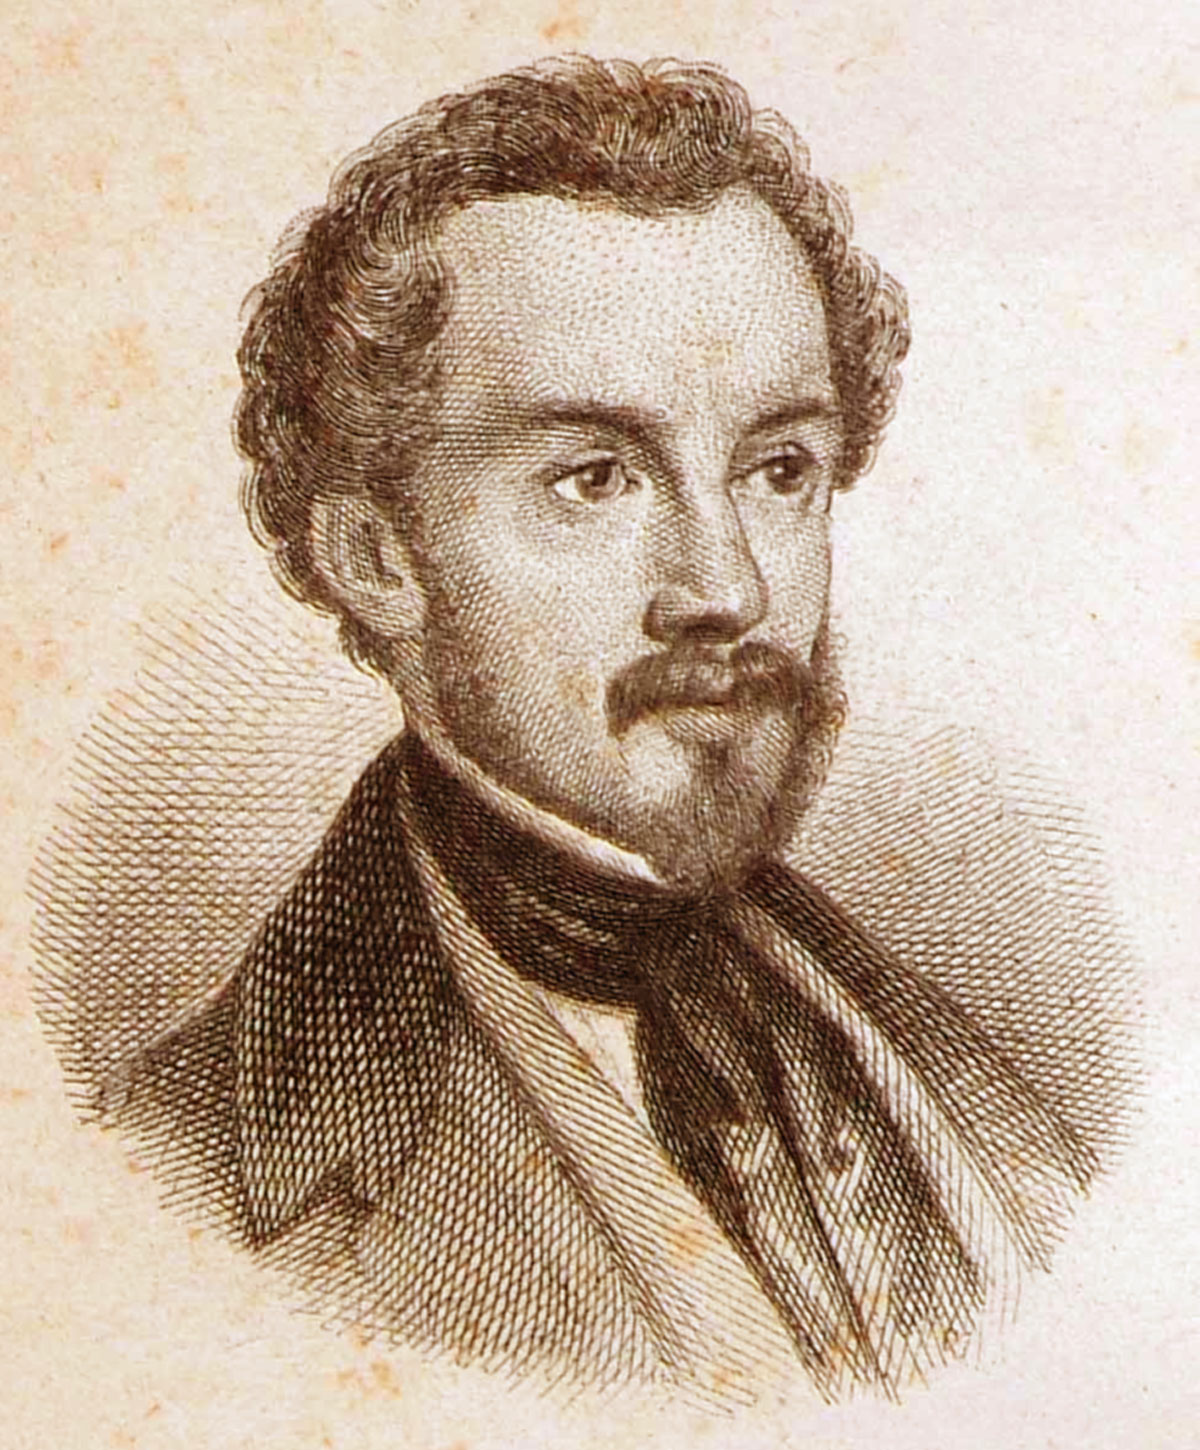 Giuseppe Giusti